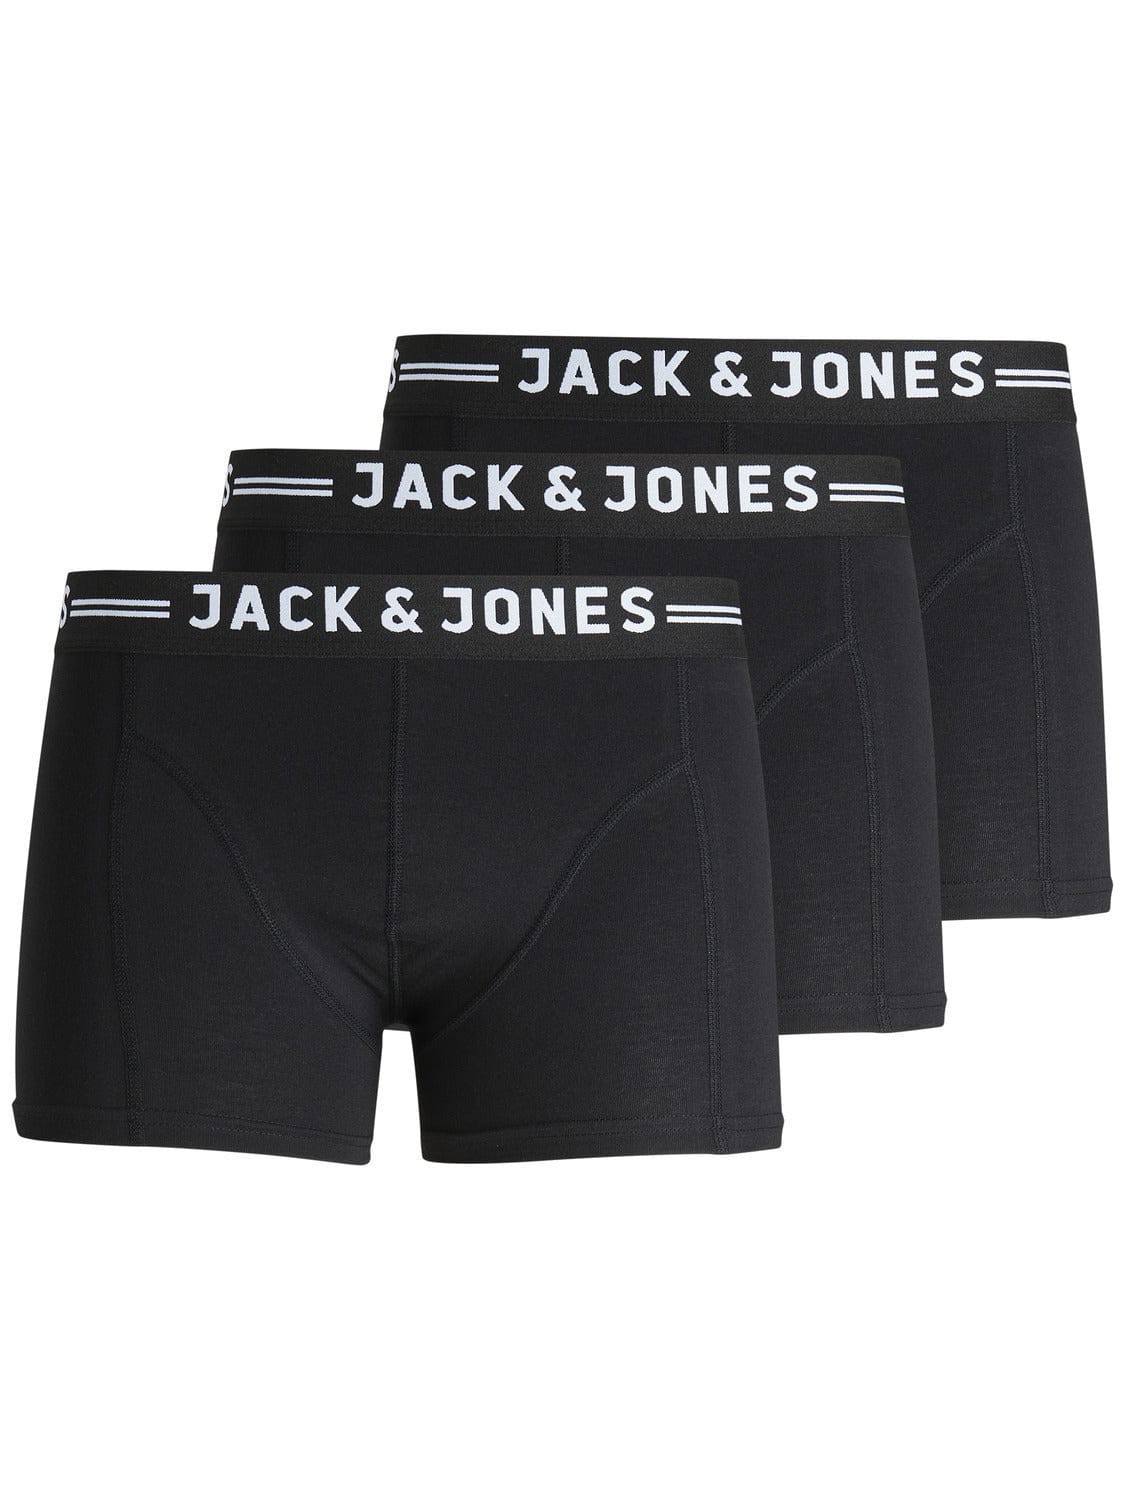 JACK&JONES Pack Calzoncillos Hombre Jack&Jones